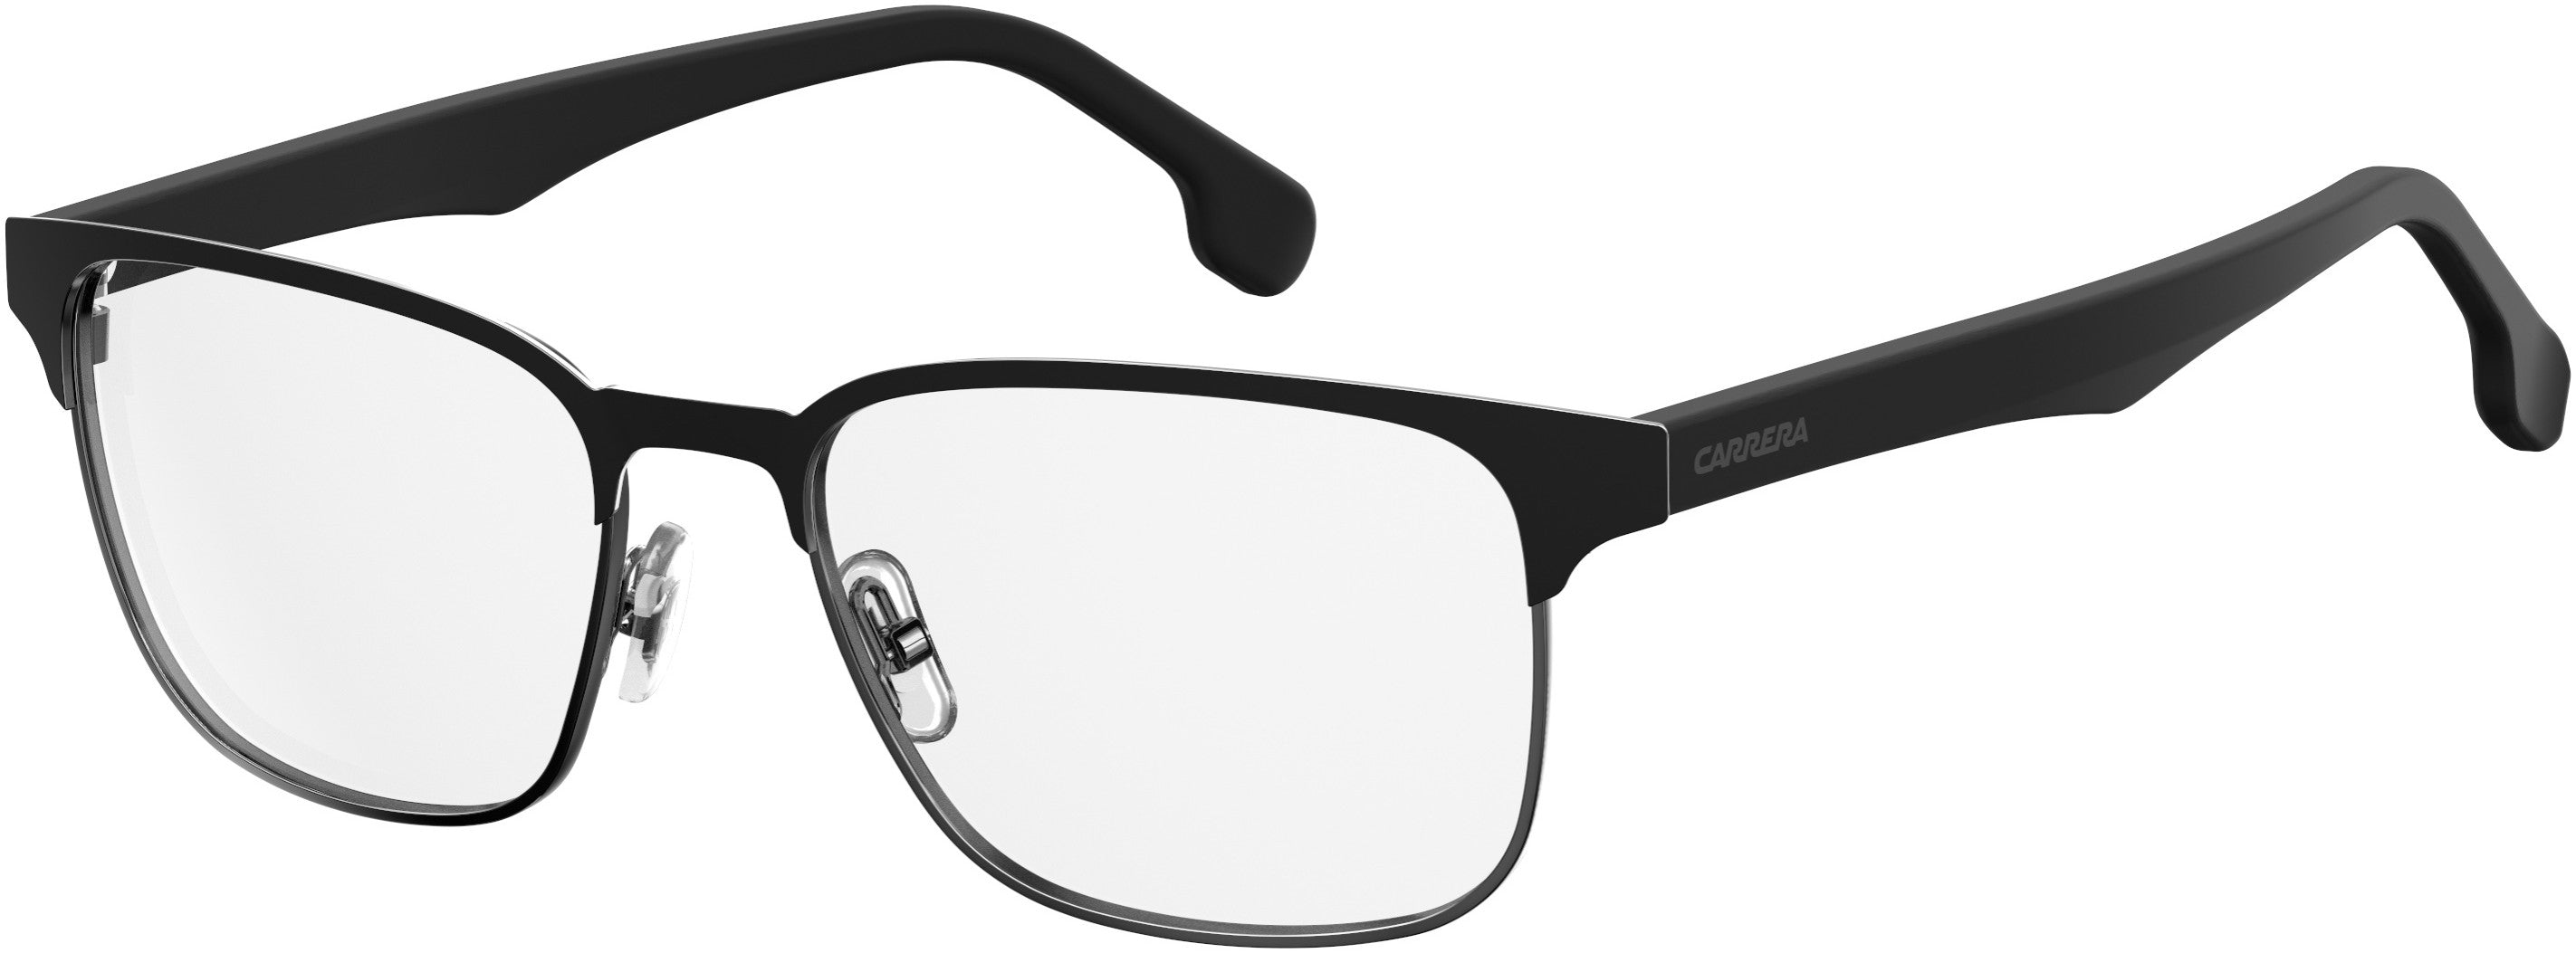  Carrera 138/V Rectangular Eyeglasses 0003-0003  Matte Black (00 Demo Lens)